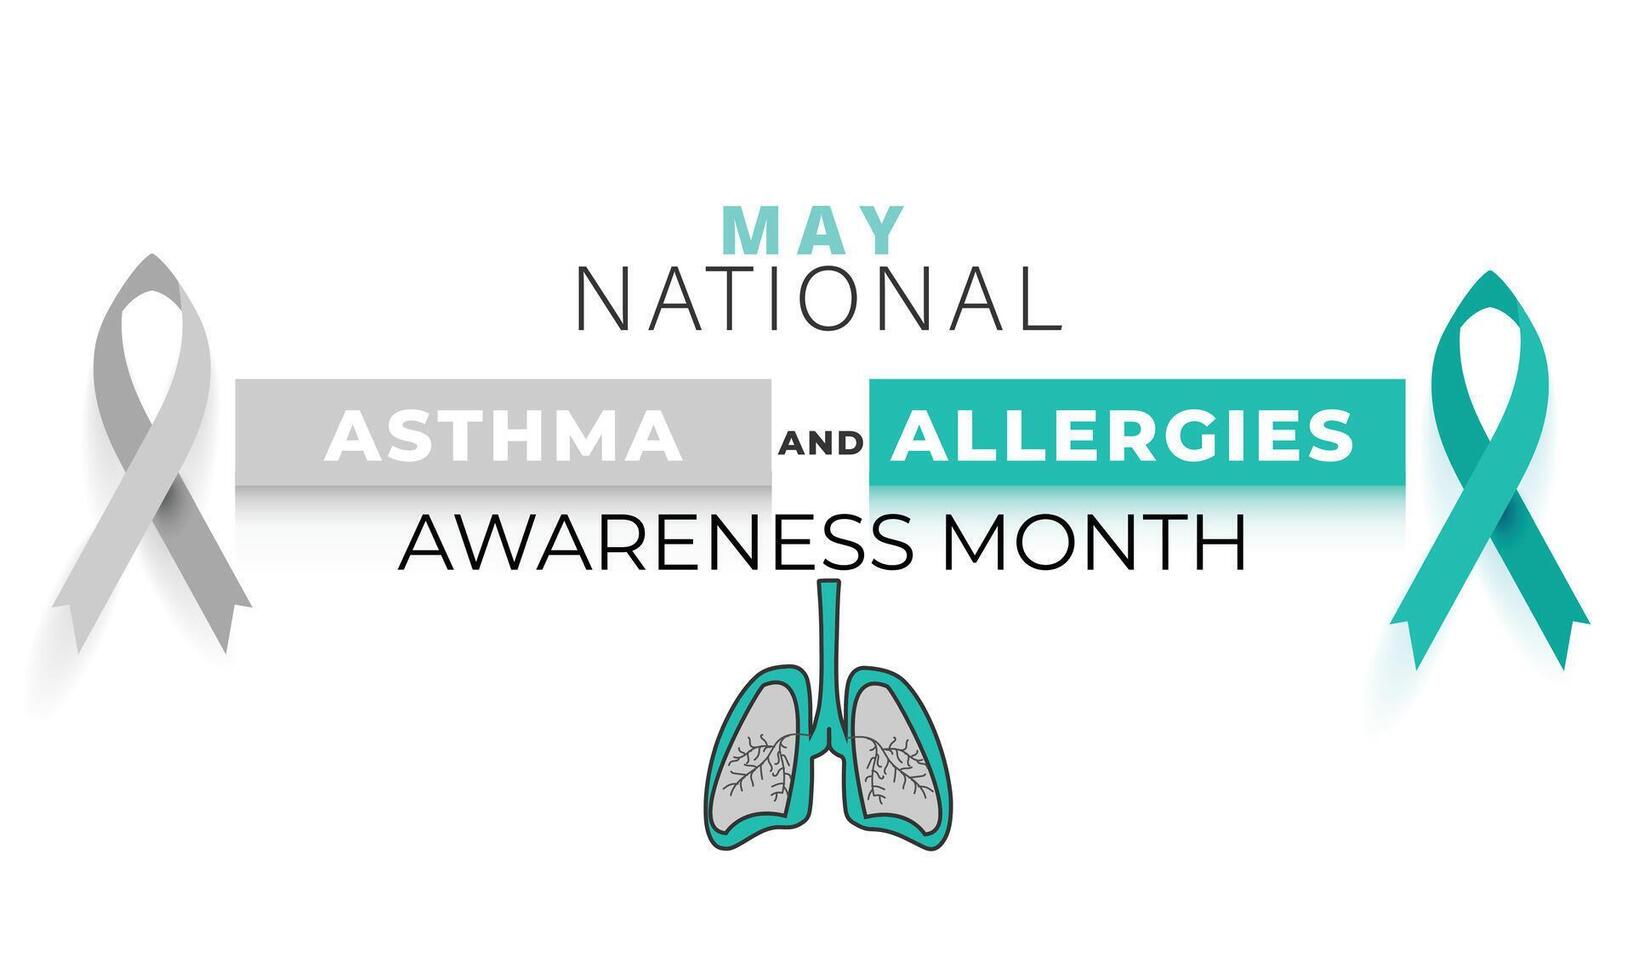 nationell astma och allergier medvetenhet månad. bakgrund, baner, kort, affisch, mall. vektor illustration.